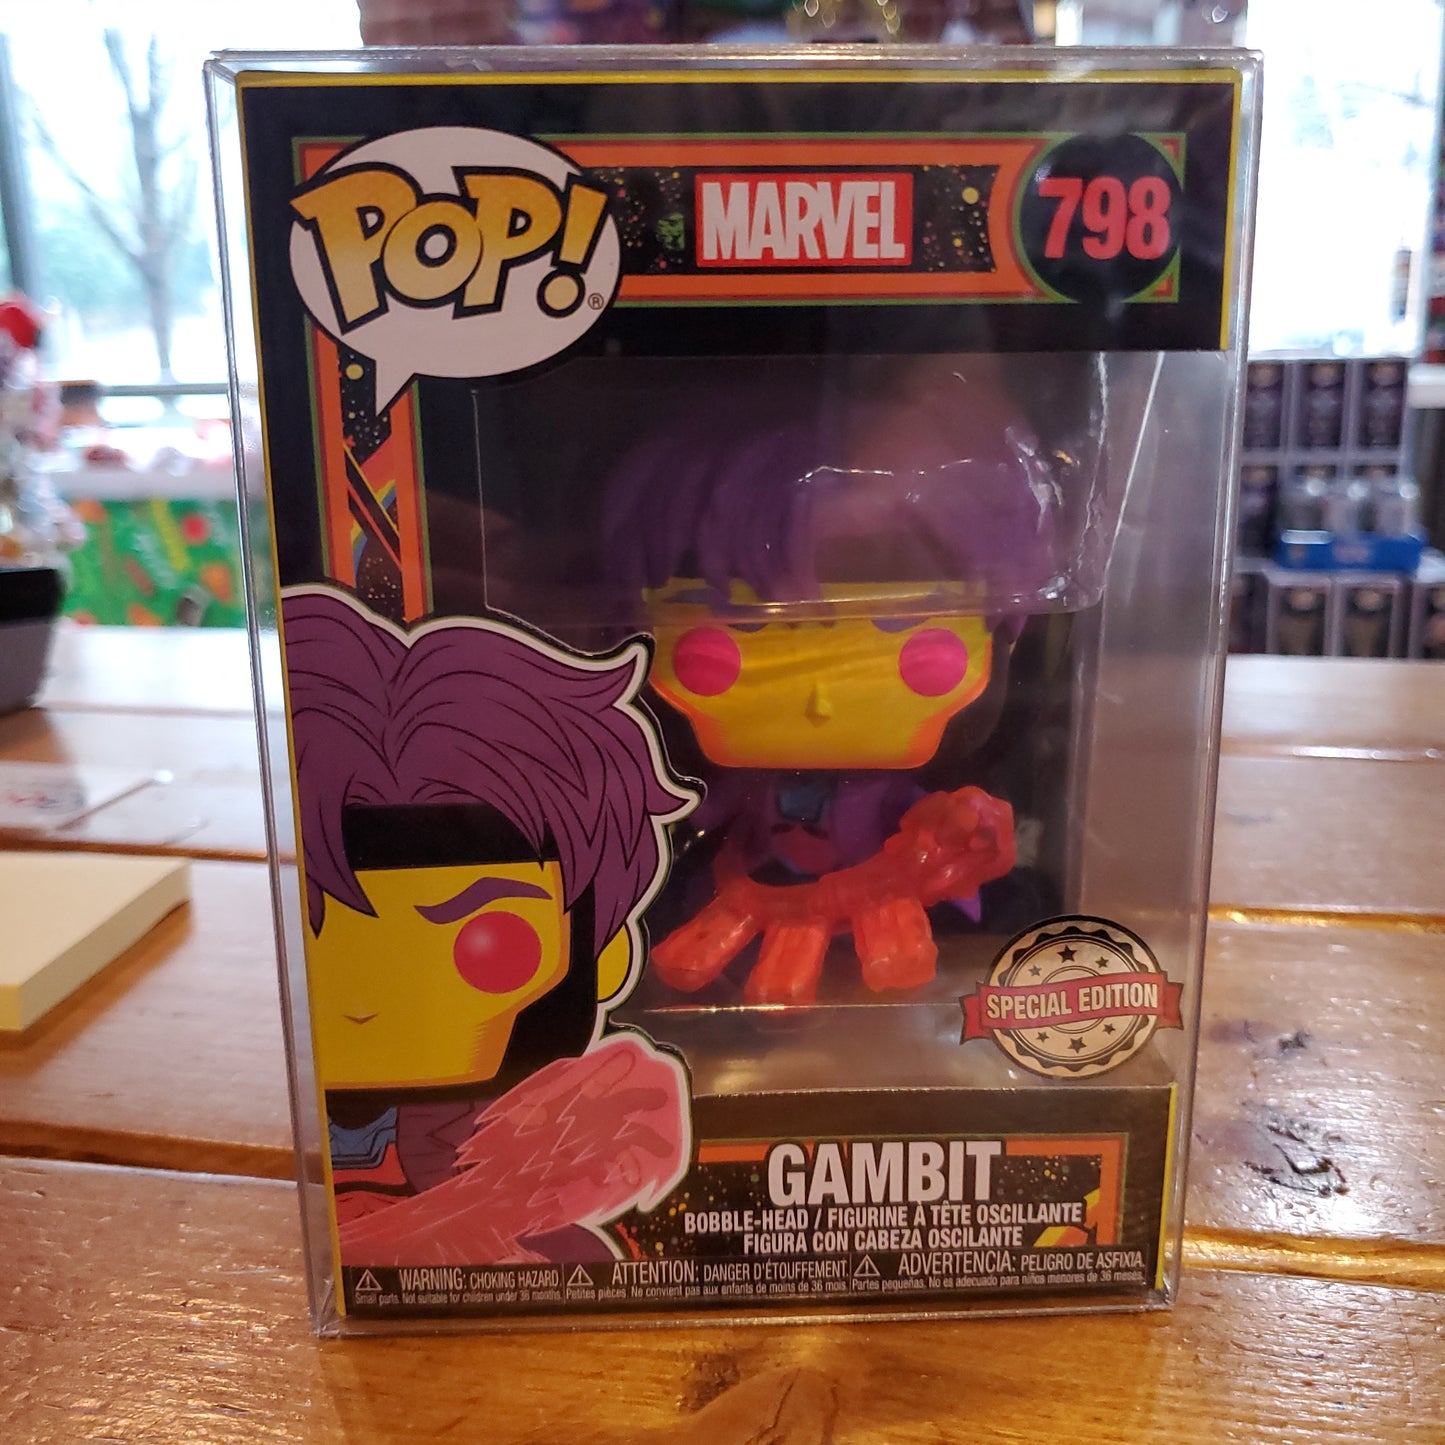 Marvel X-men - Gambit #798 (Blacklight) - Funko Pop! Vinyl Figure